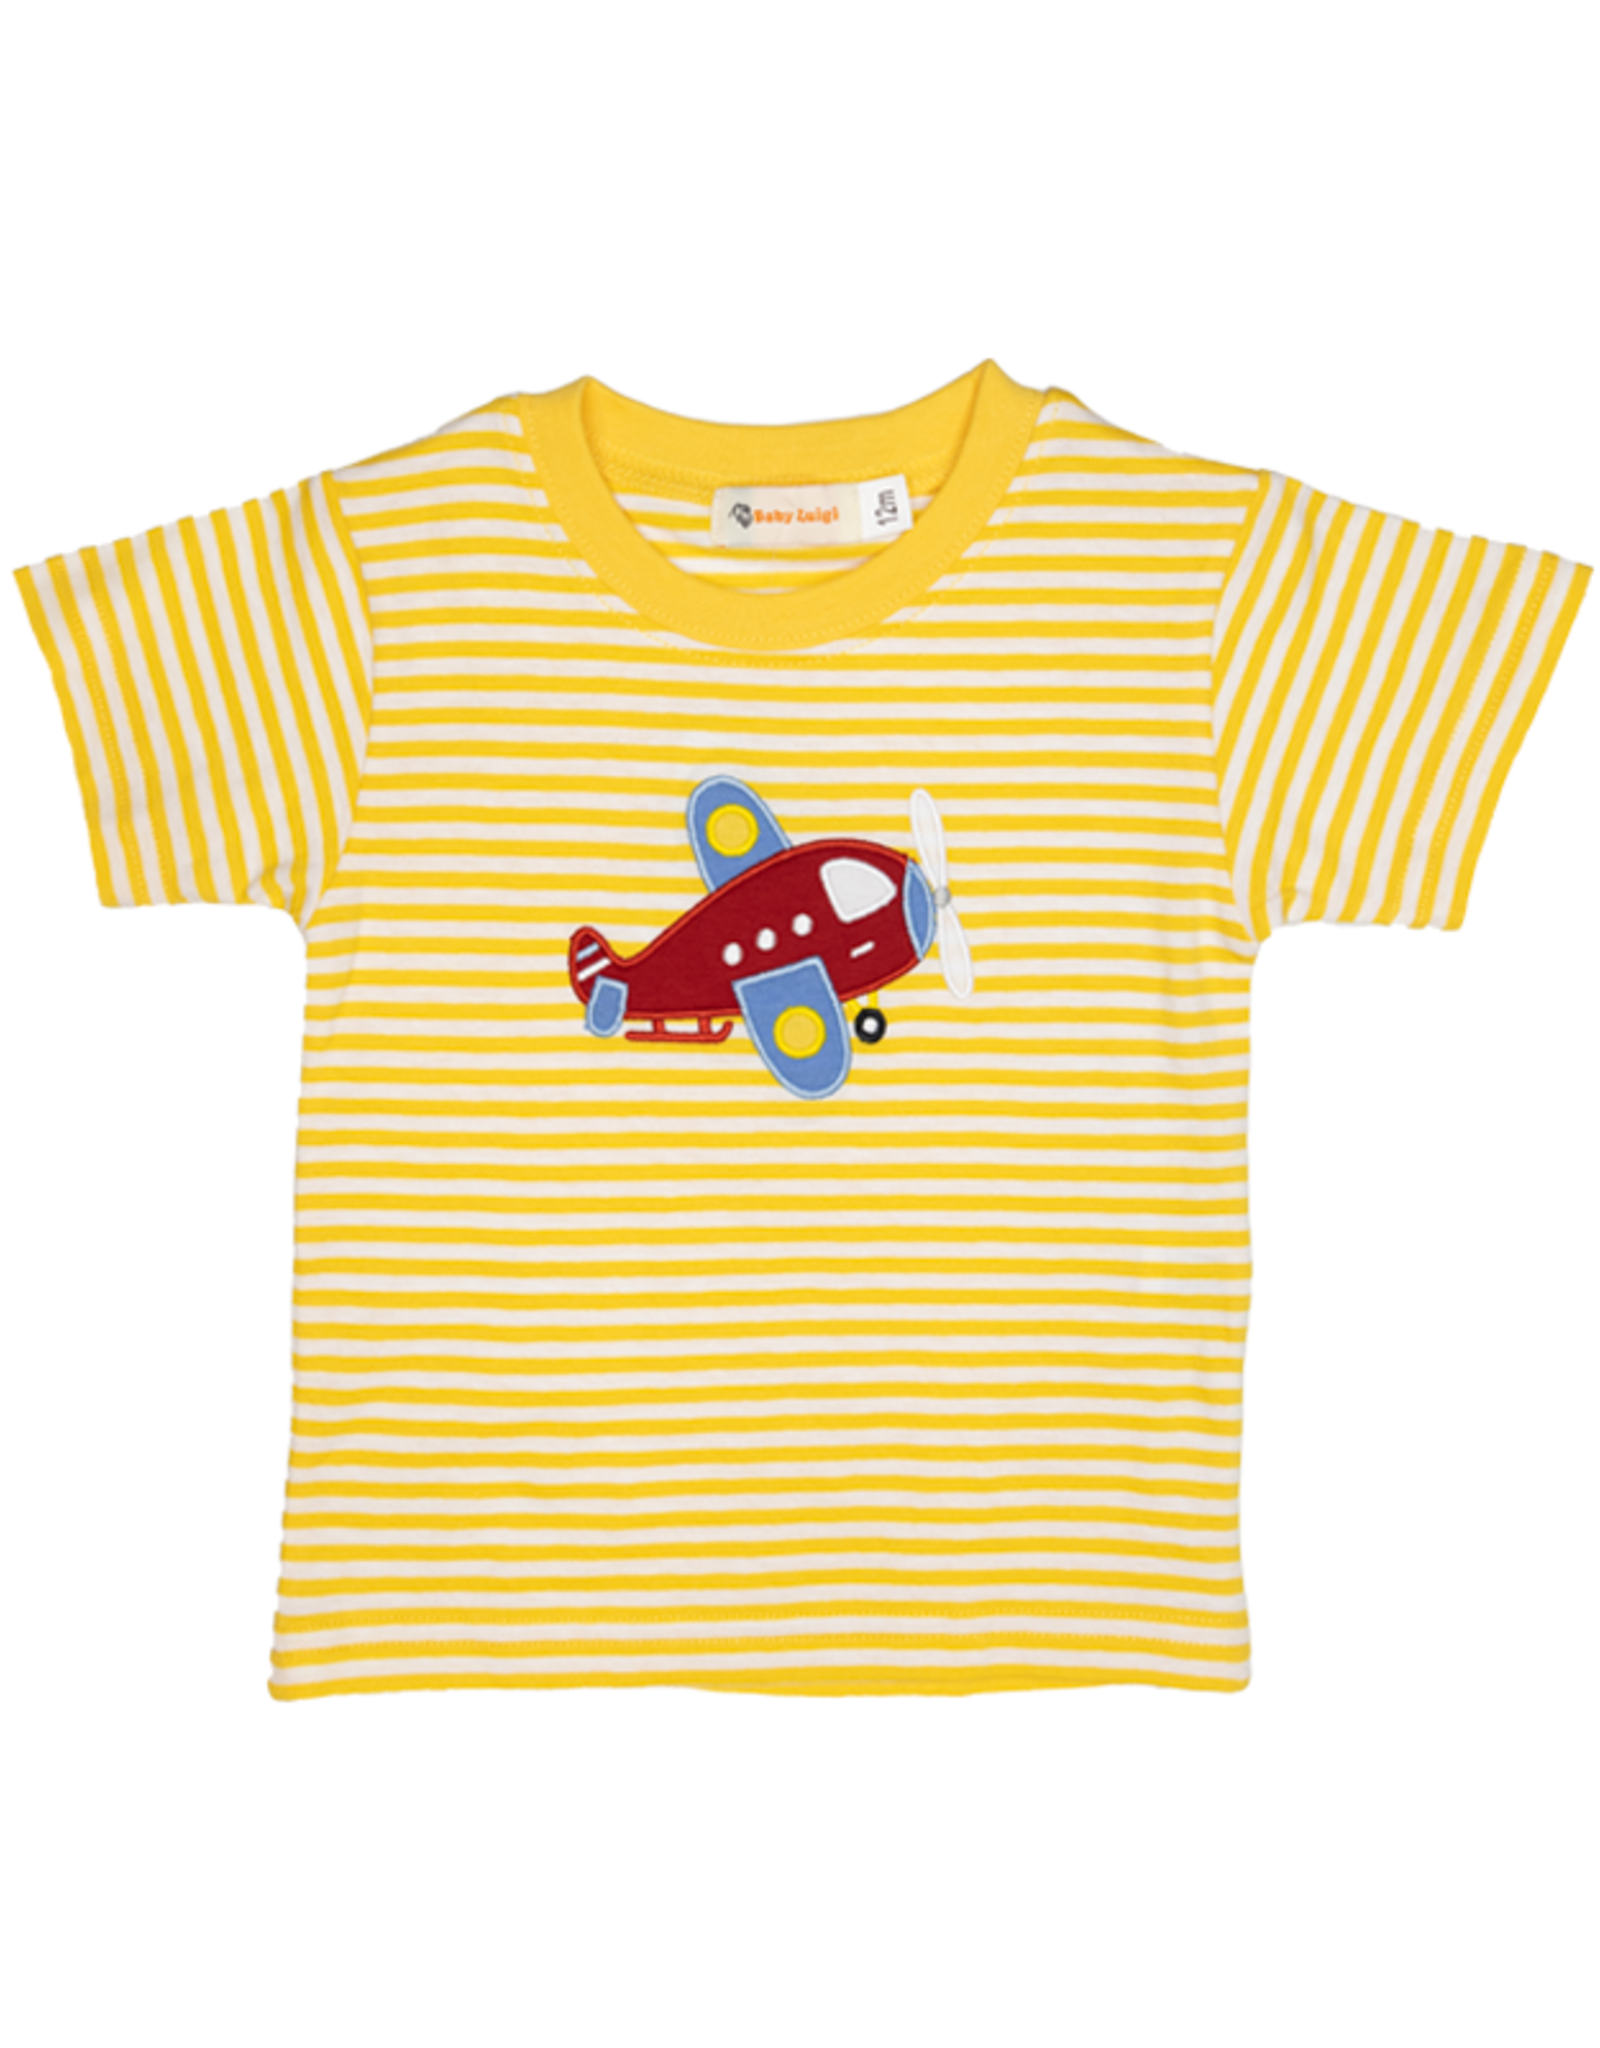 Luigi S24 Yellow Airplane Shirt